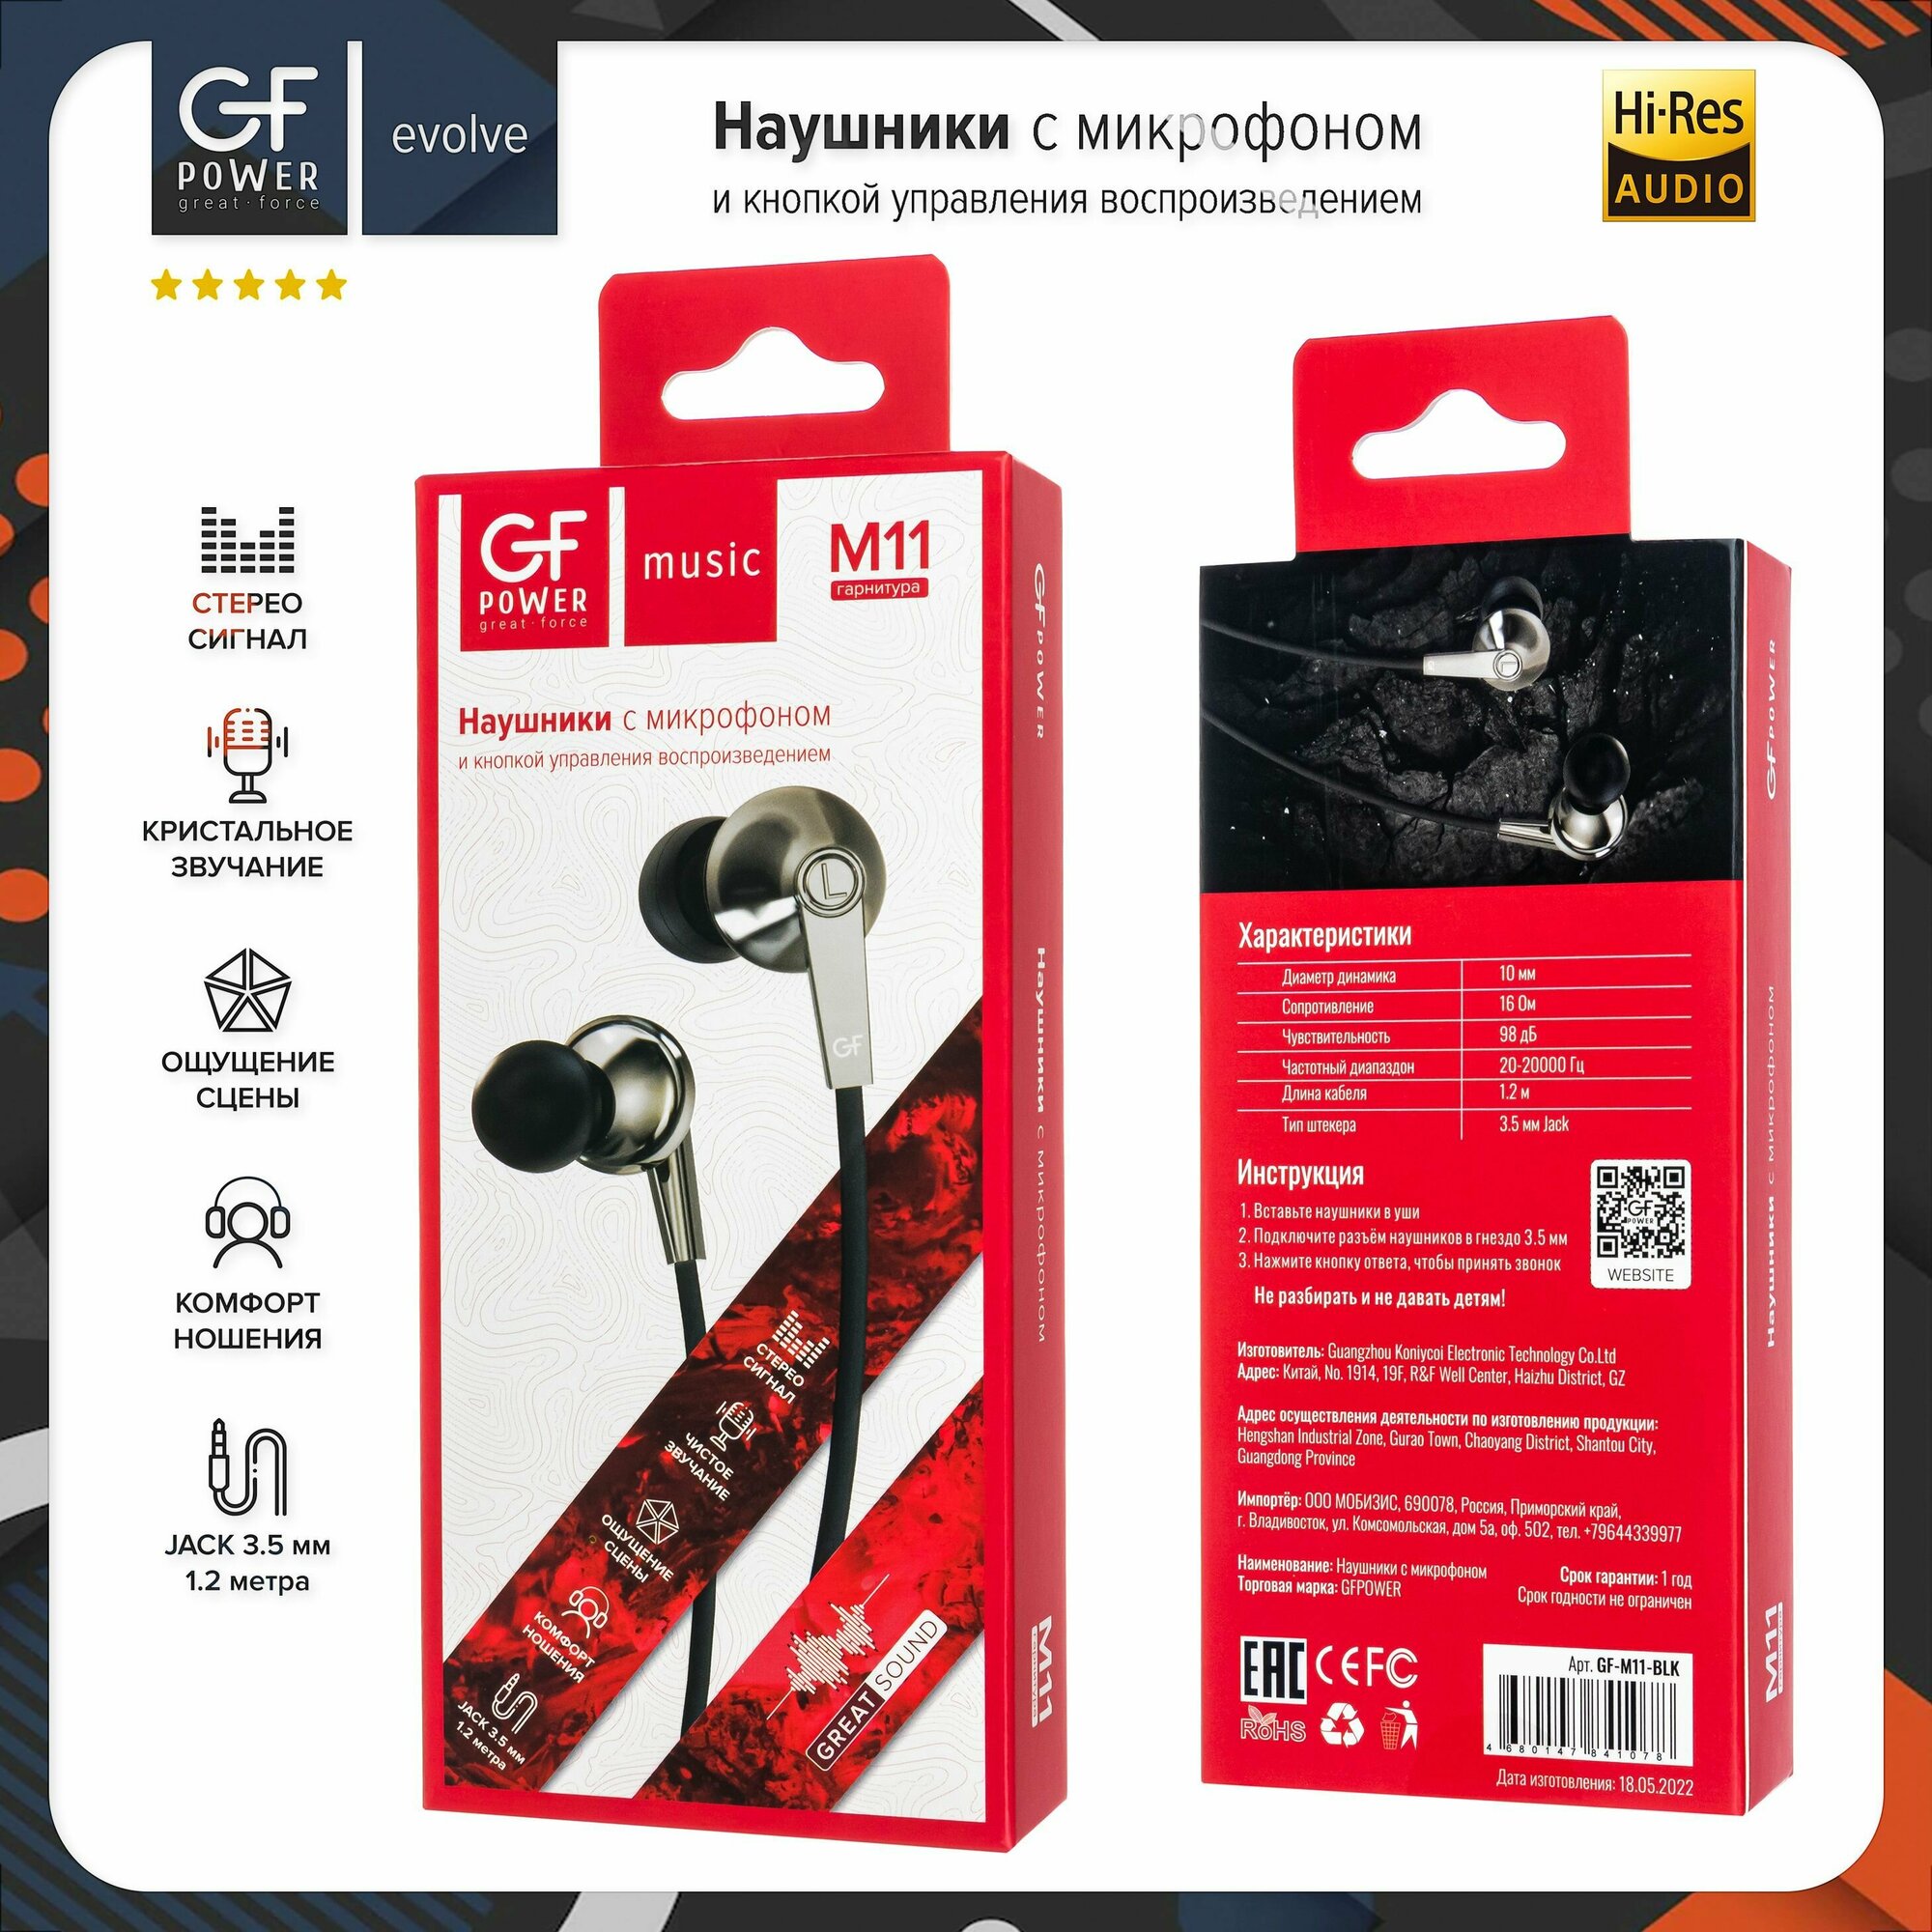 Наушники проводные с микрофоном GFPower M11, черный (гарнитура)